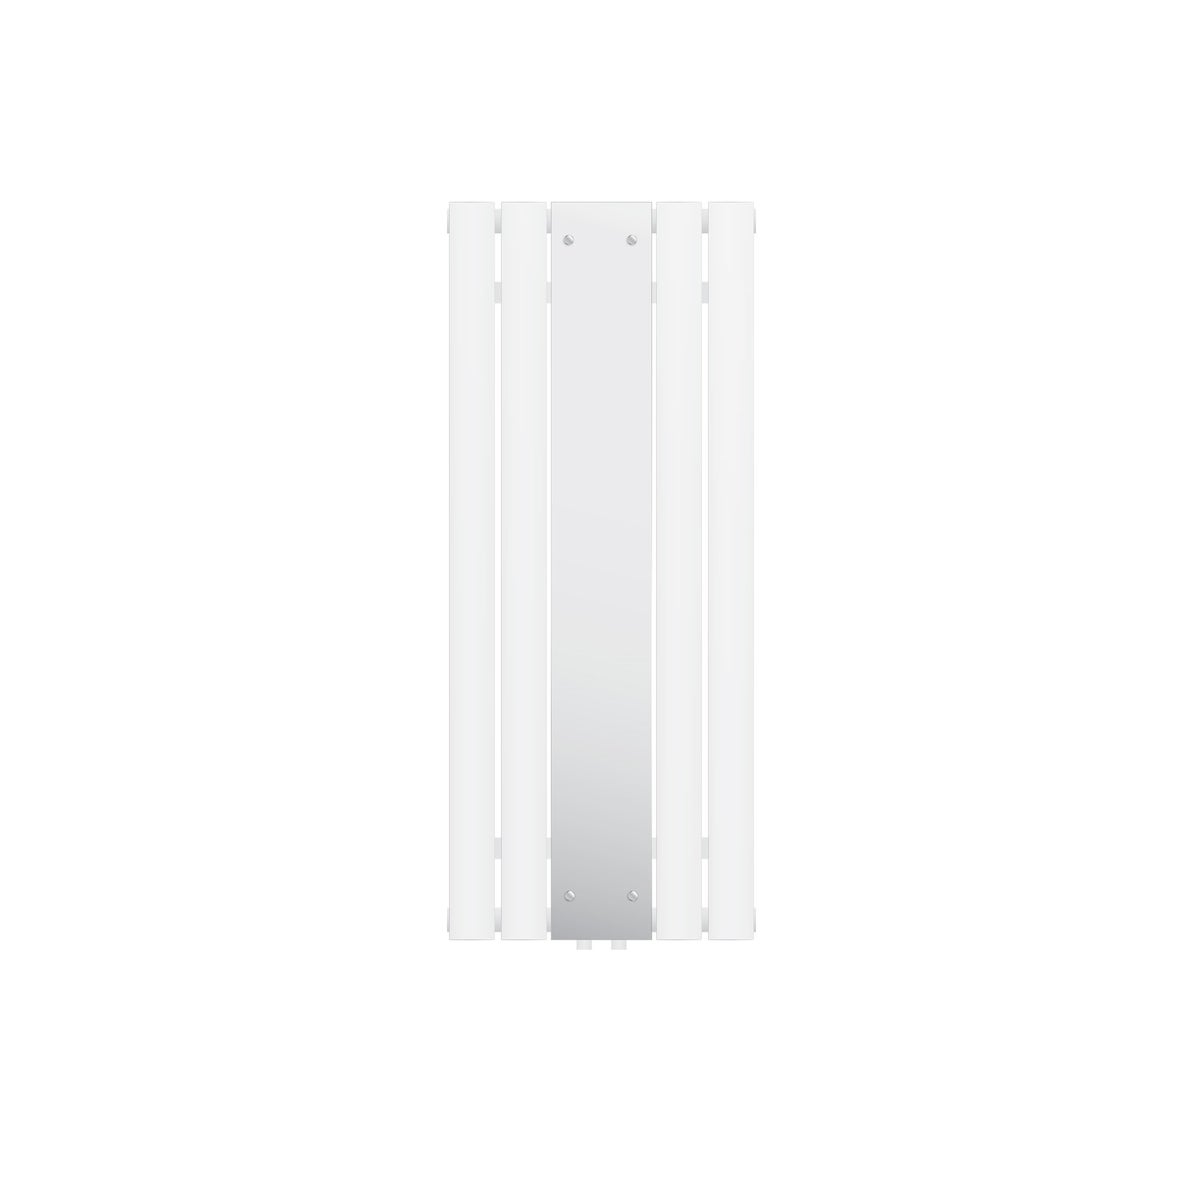 ML-Design Badheizkörper Flach 1200 x 450 mm Weiß mit Spiegel, Spiegelheizkörper Glasheizkörper, Design Paneelheizkörper Mittelanschluss Heizung, Flachheizkörper Vertikal Einlagig, inkl. Montage-Set